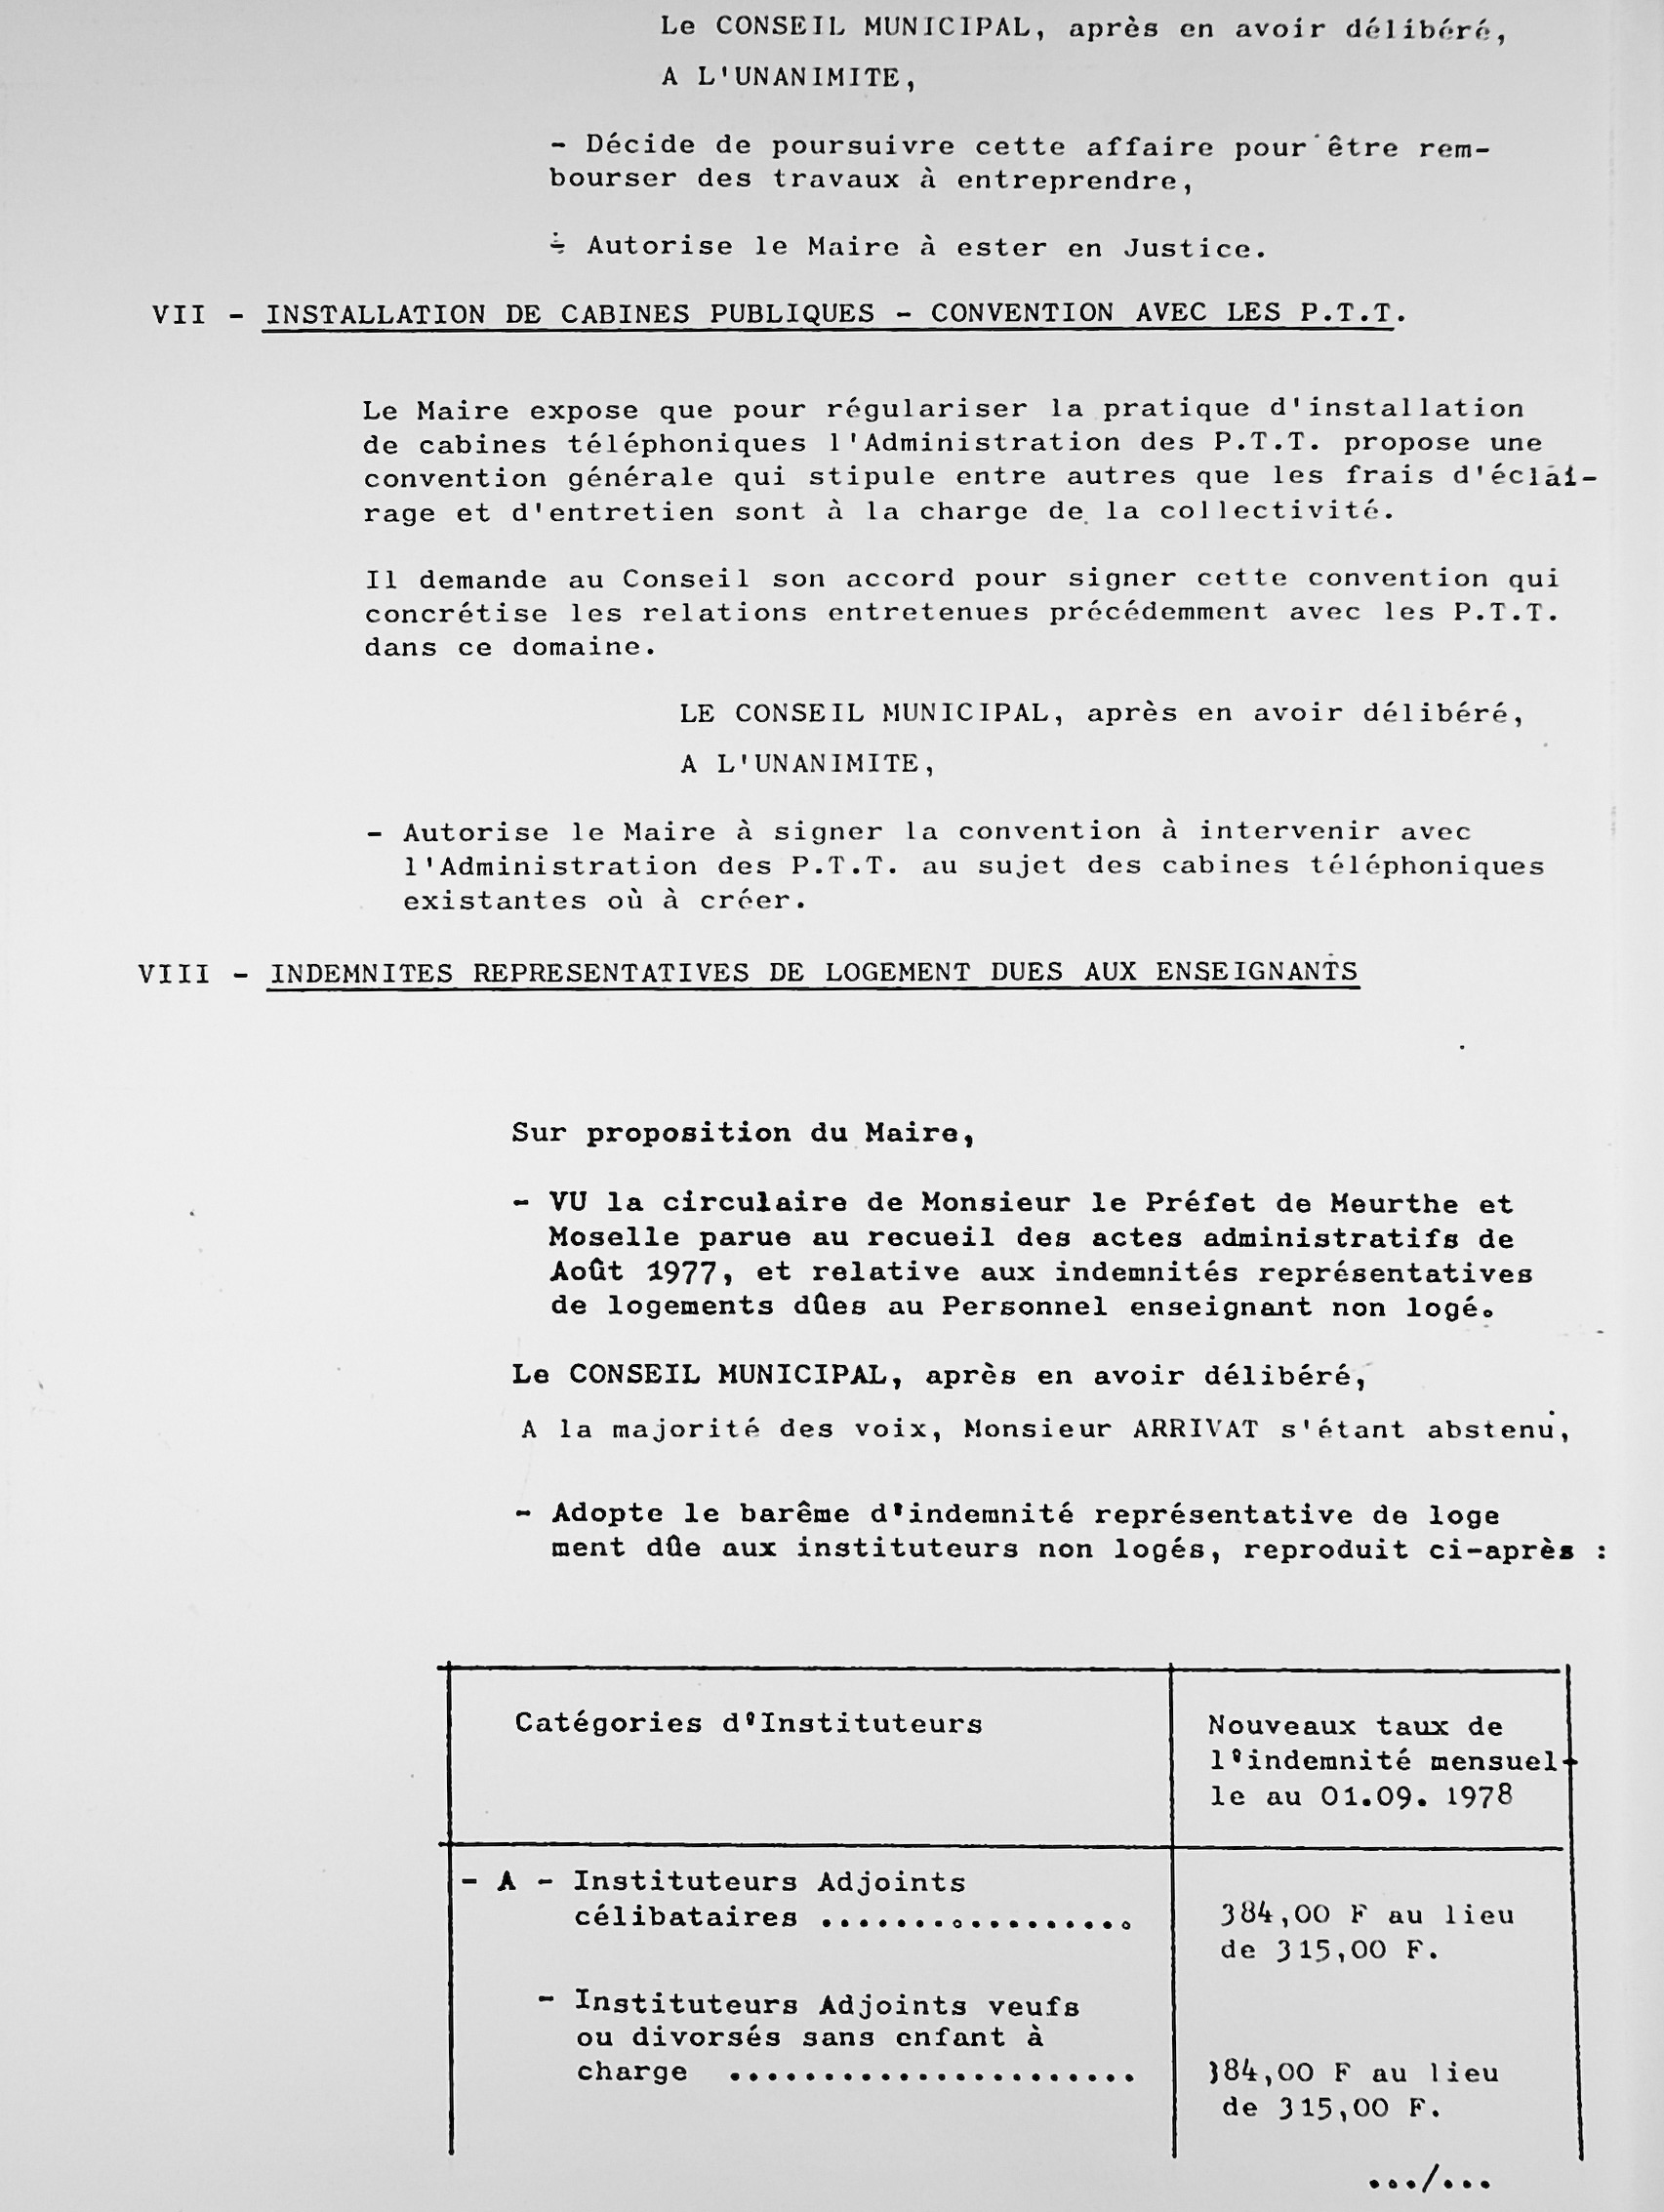 Feuillet_053B_1977-1980.jpg